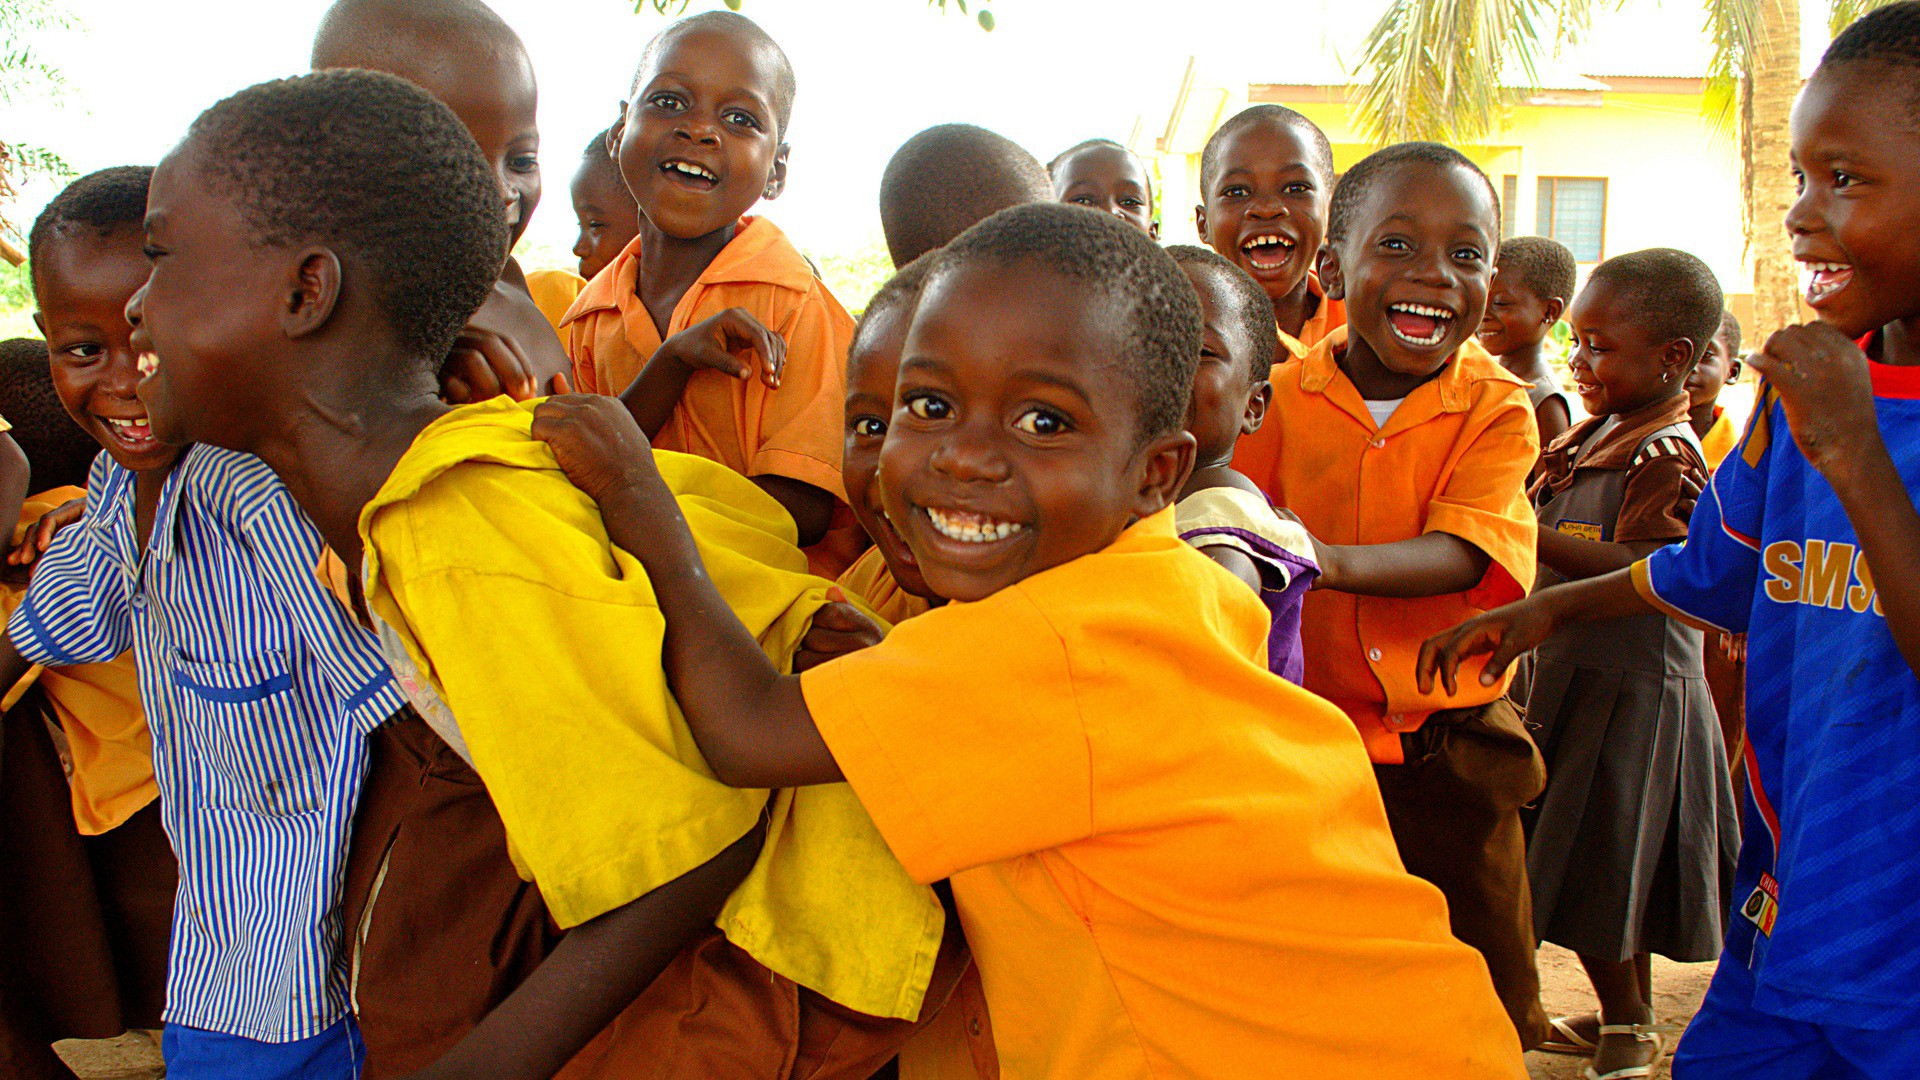 Grâce aux dons, l'Action de Carême aide notamment les populations des pays du Sud (Photo:Ian Muttoo/Flickr/CC BY-NC-SA 2.0)